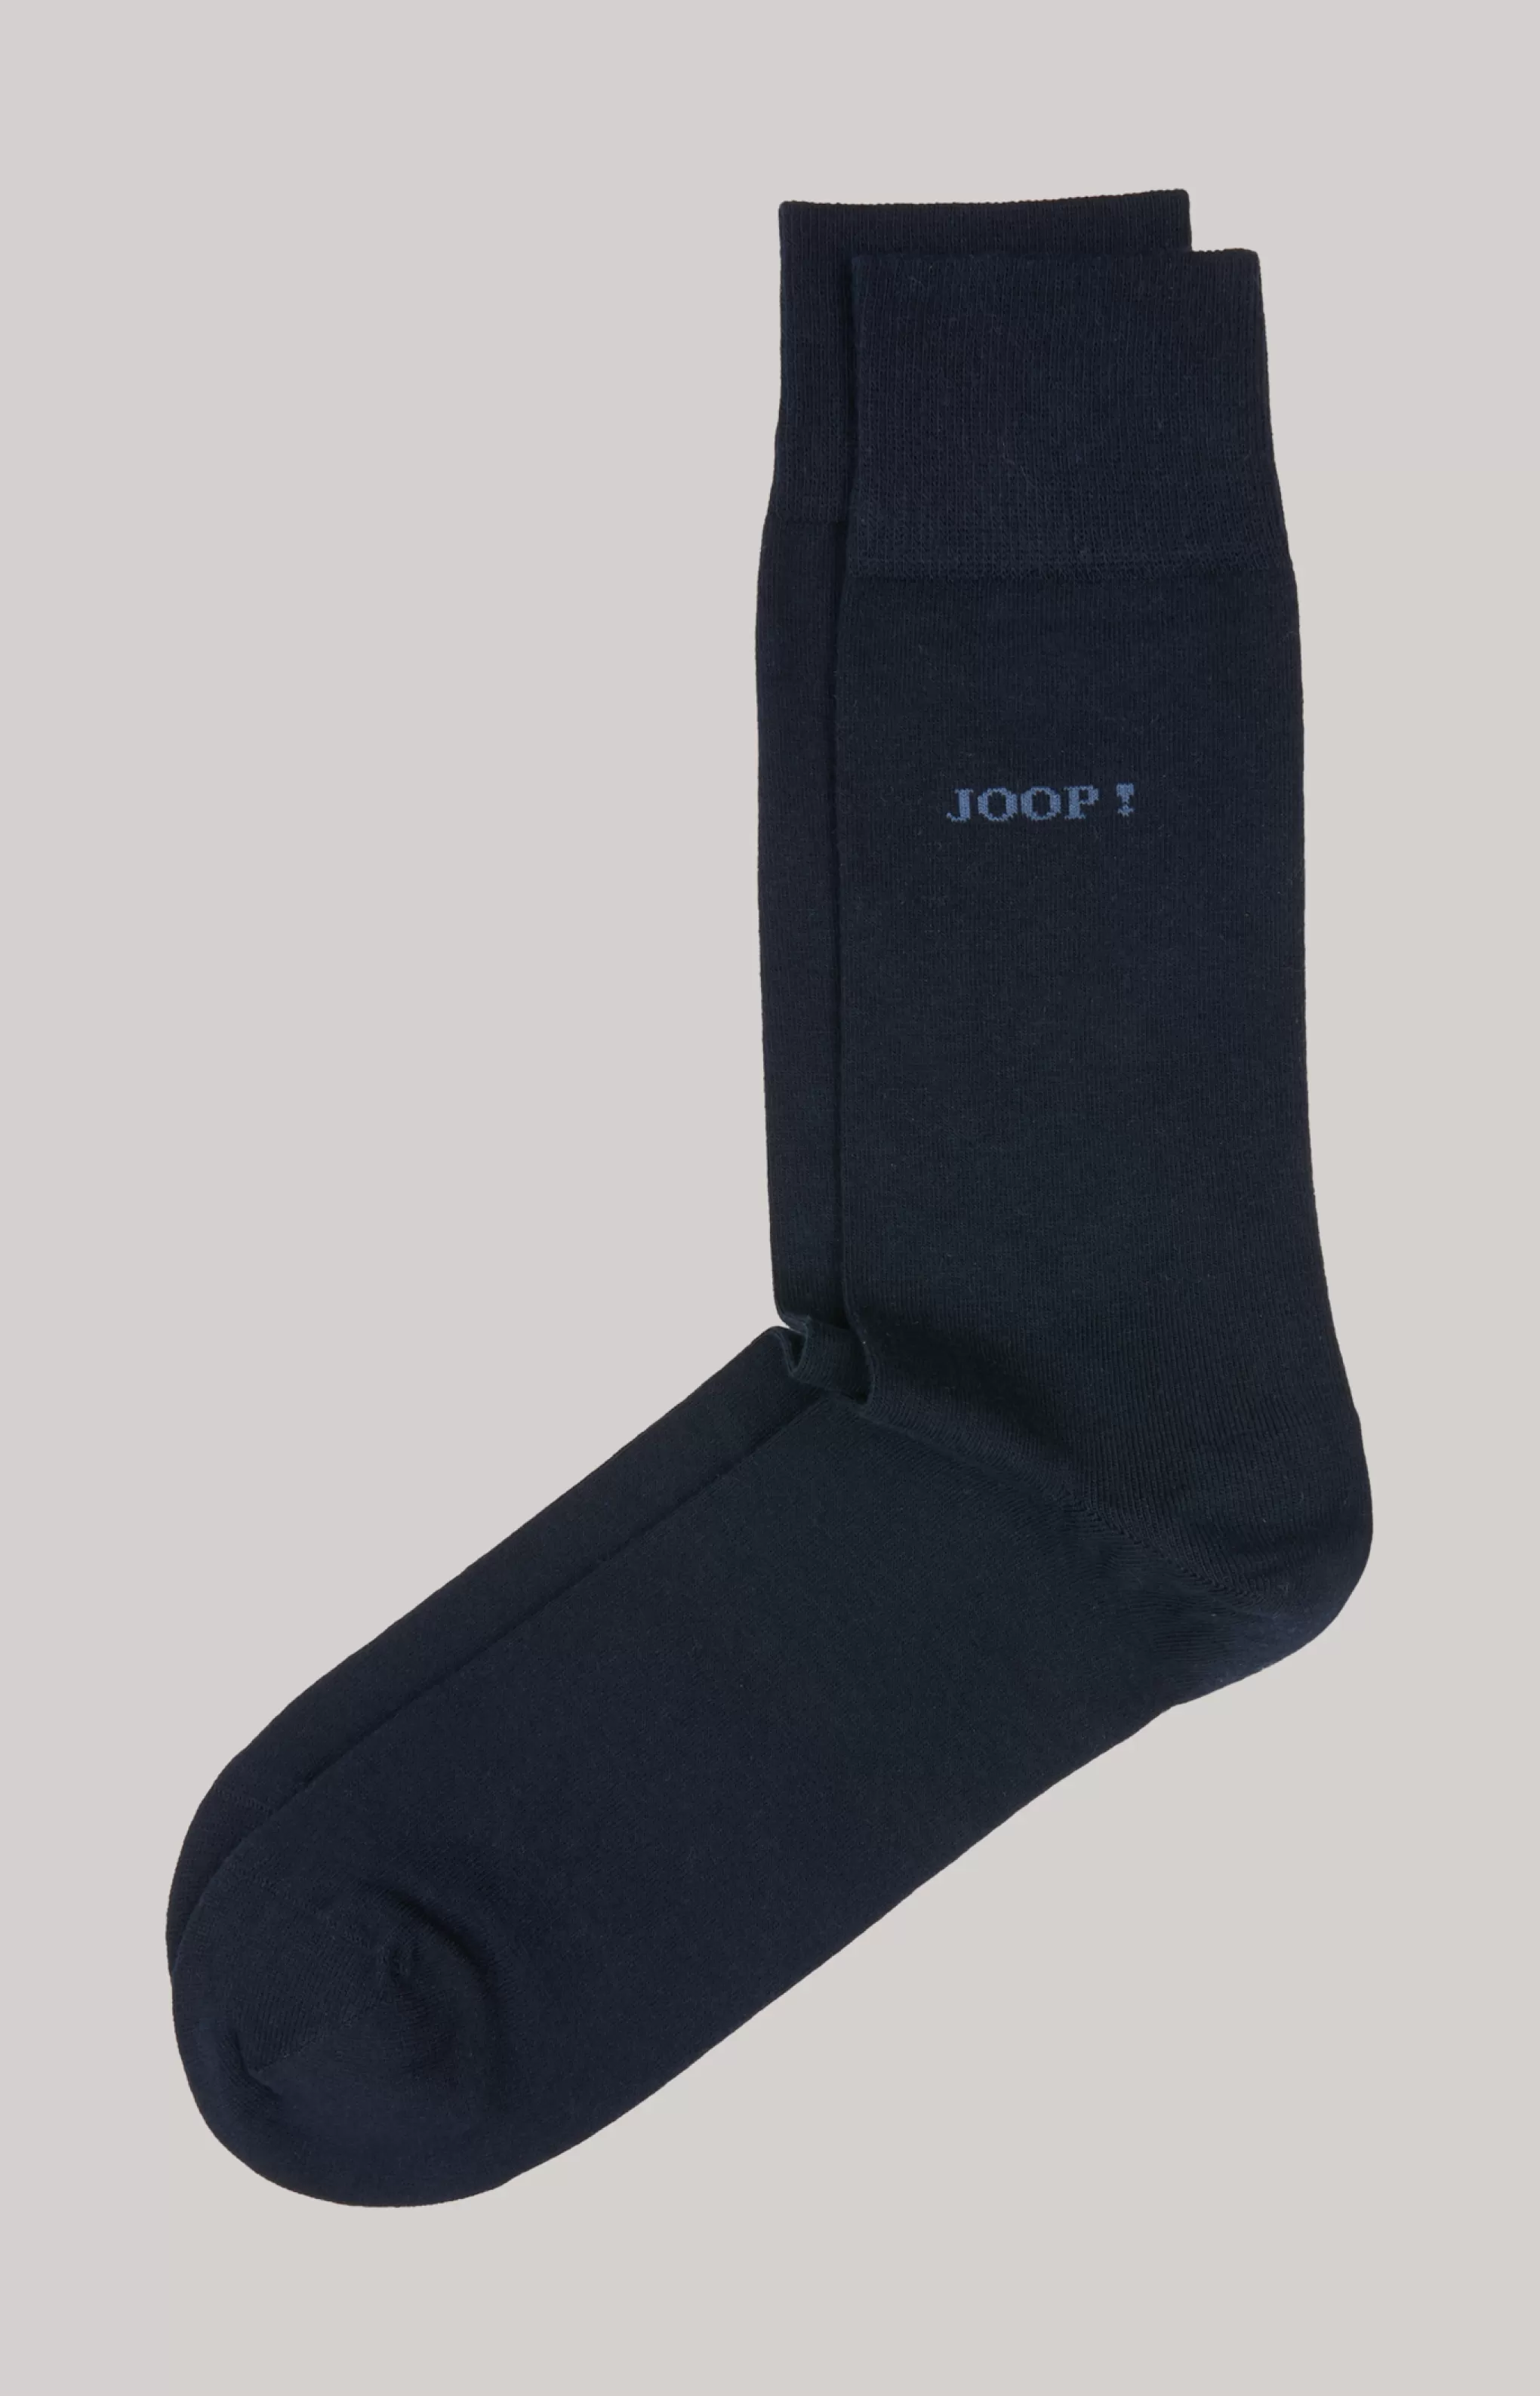 Socks*JOOP Socks Superior cotton socks in